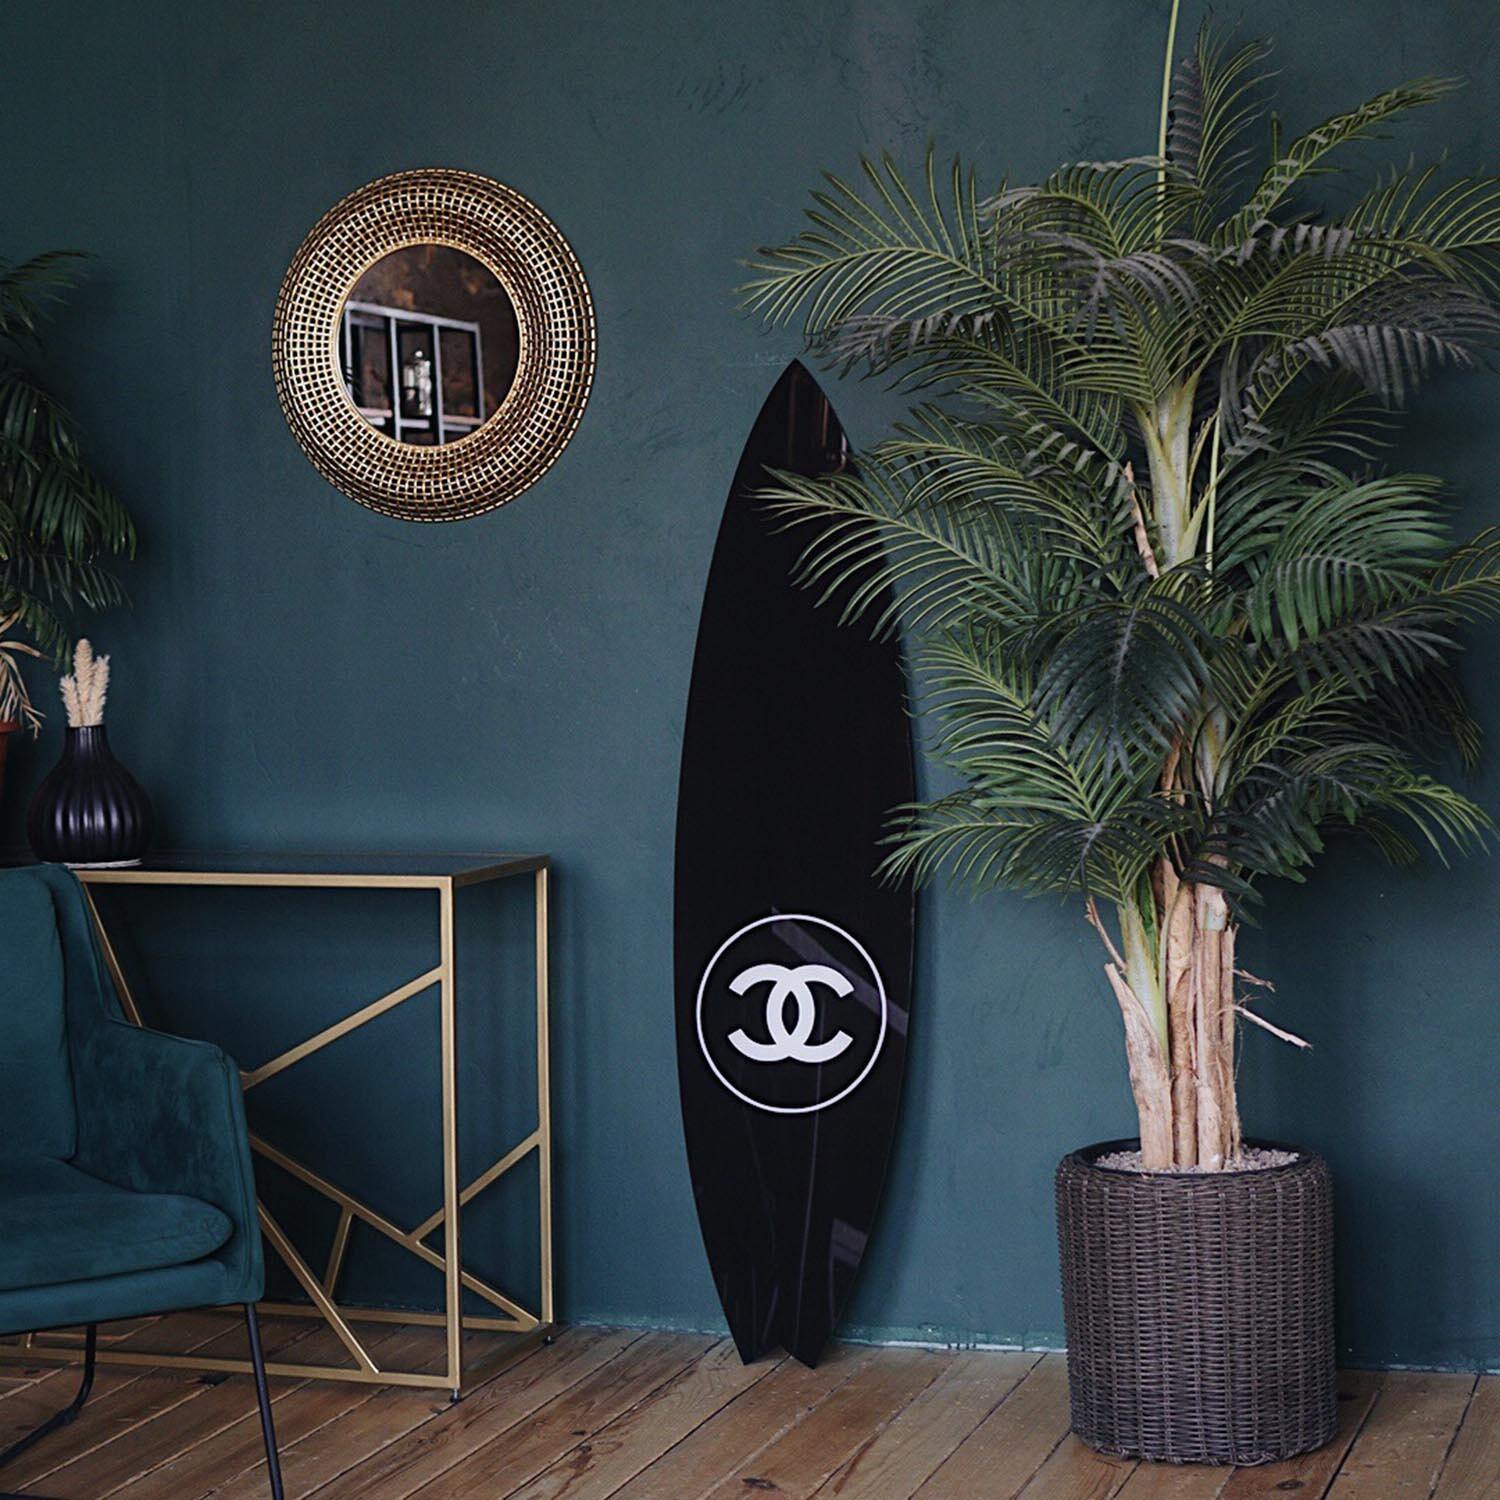 Planche de surf noire Chanel Poster